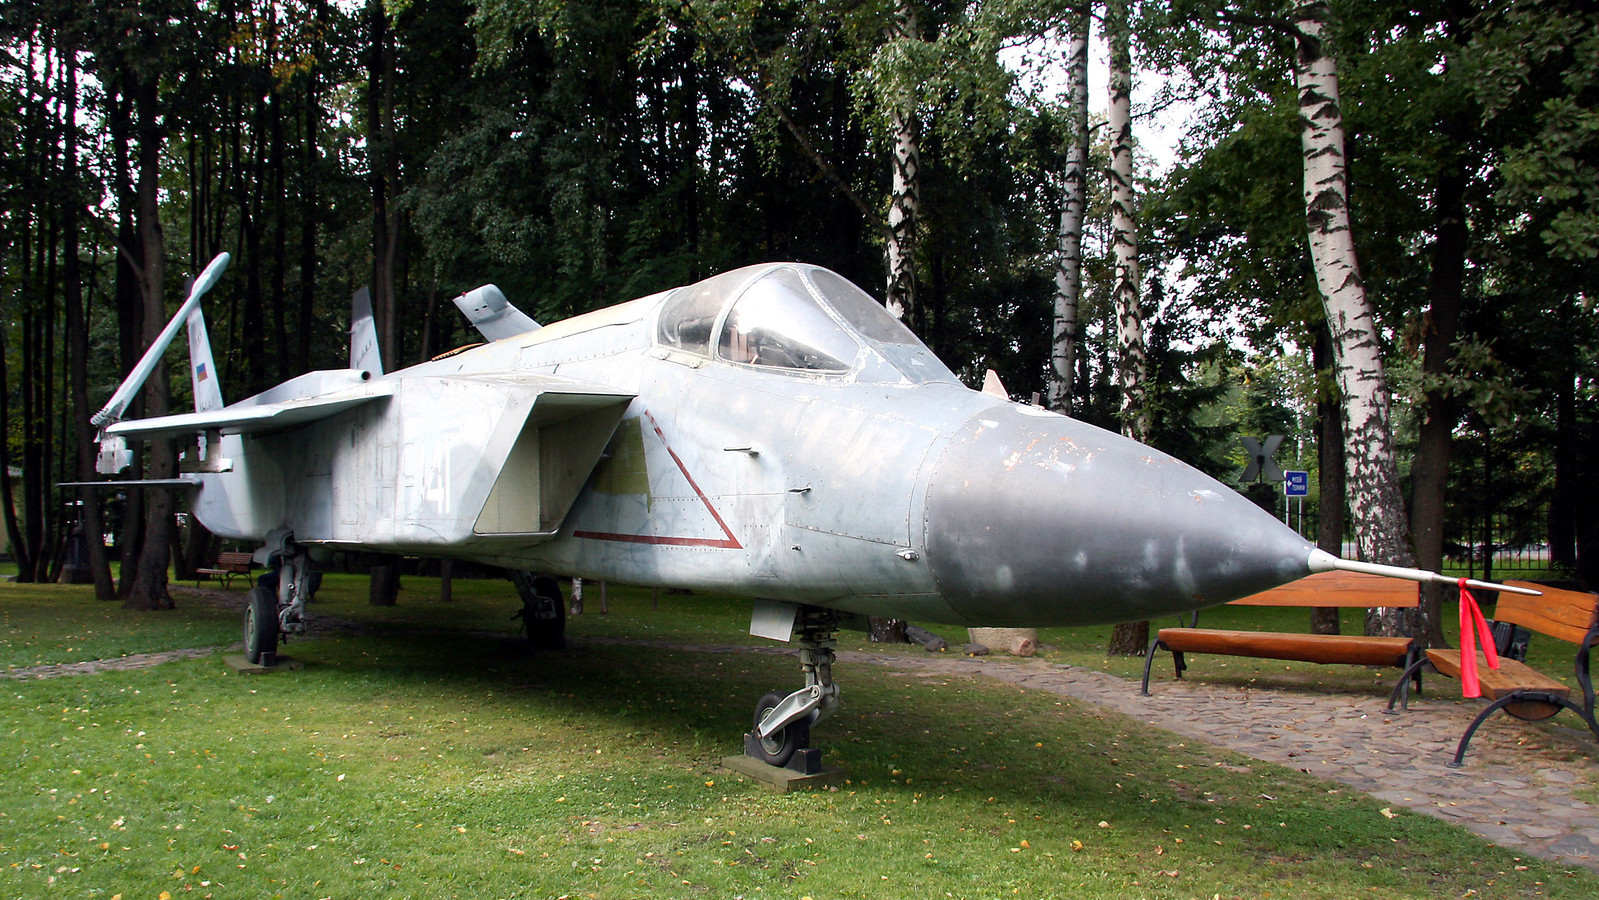 Yak-141 en el Museo de Vehículos de Vadim Zadorozhni en 2009.